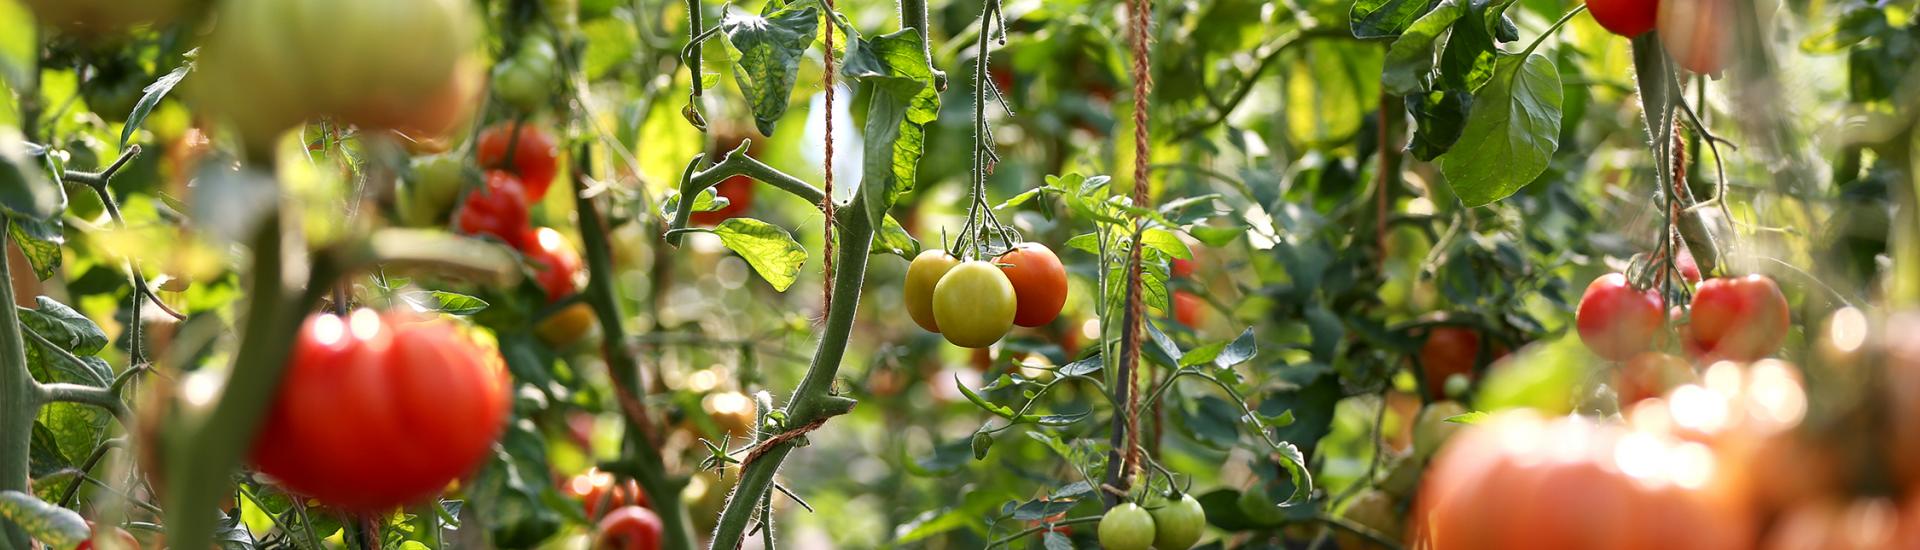 Tomatoes growing in Mediterranean Biome